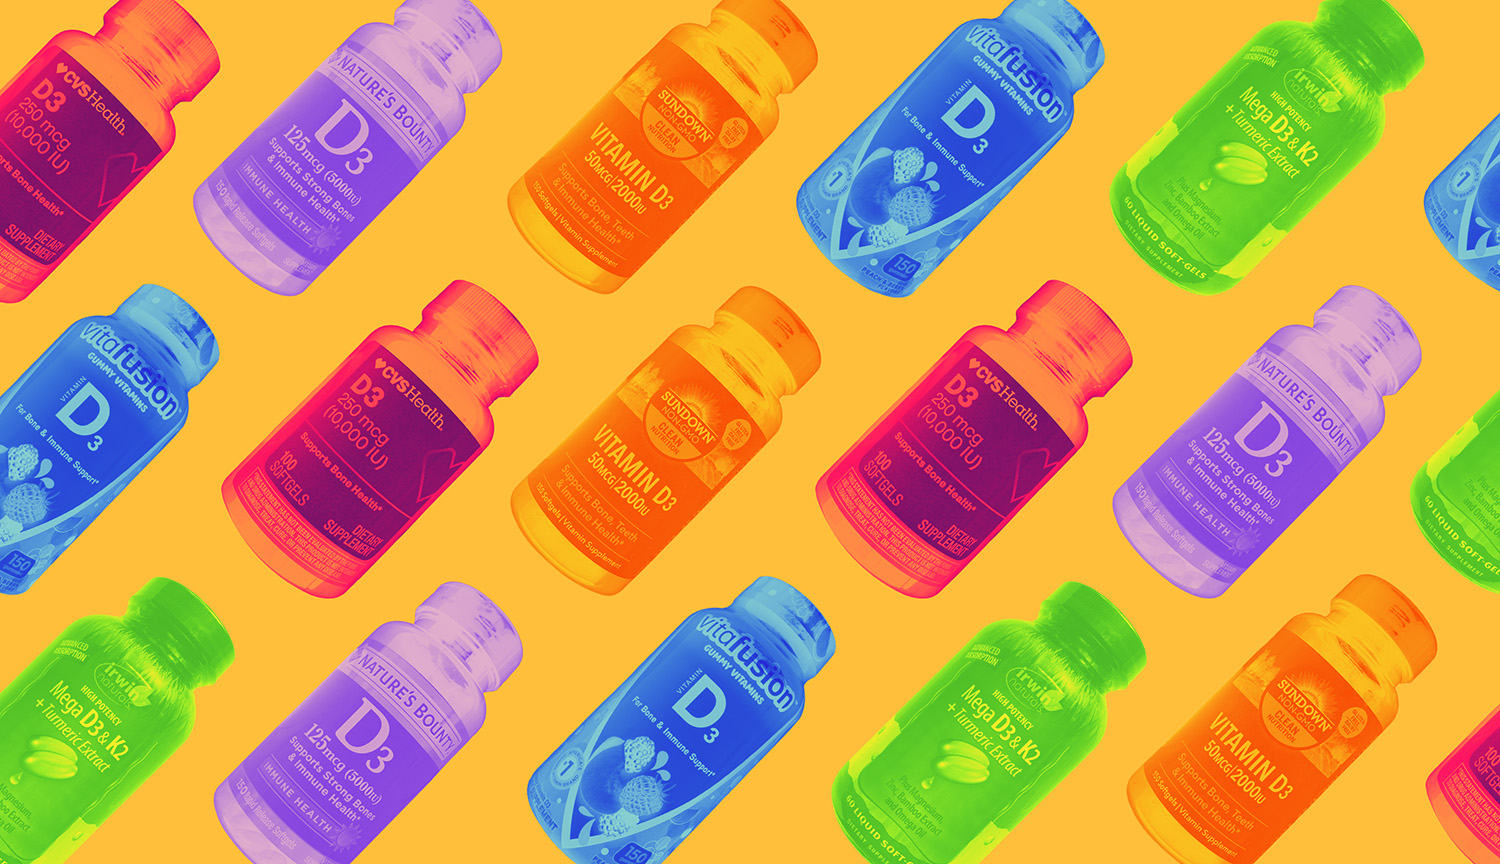 Una serie de botellas de vitamina D3 en colores brillantes sobre un fondo naranja.